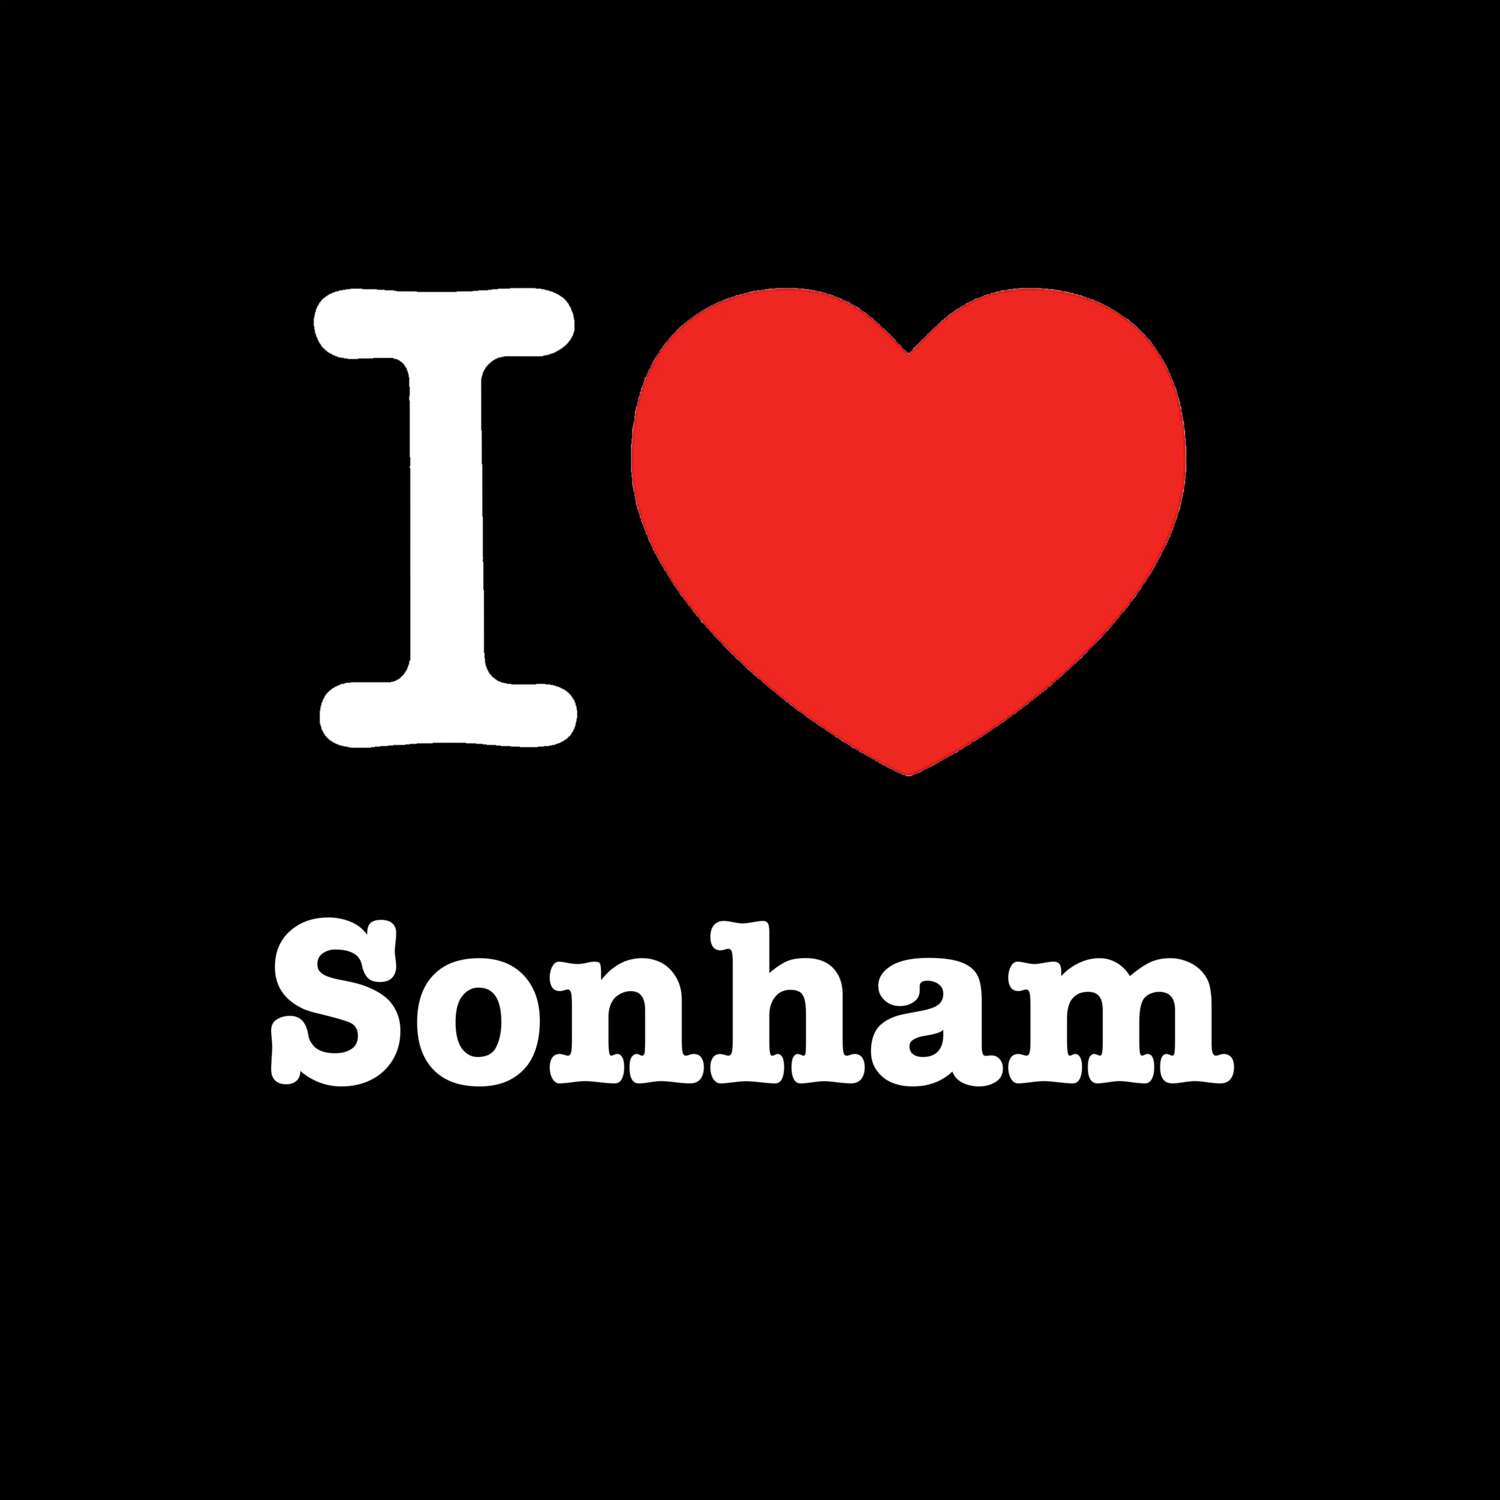 Sonham T-Shirt »I love«